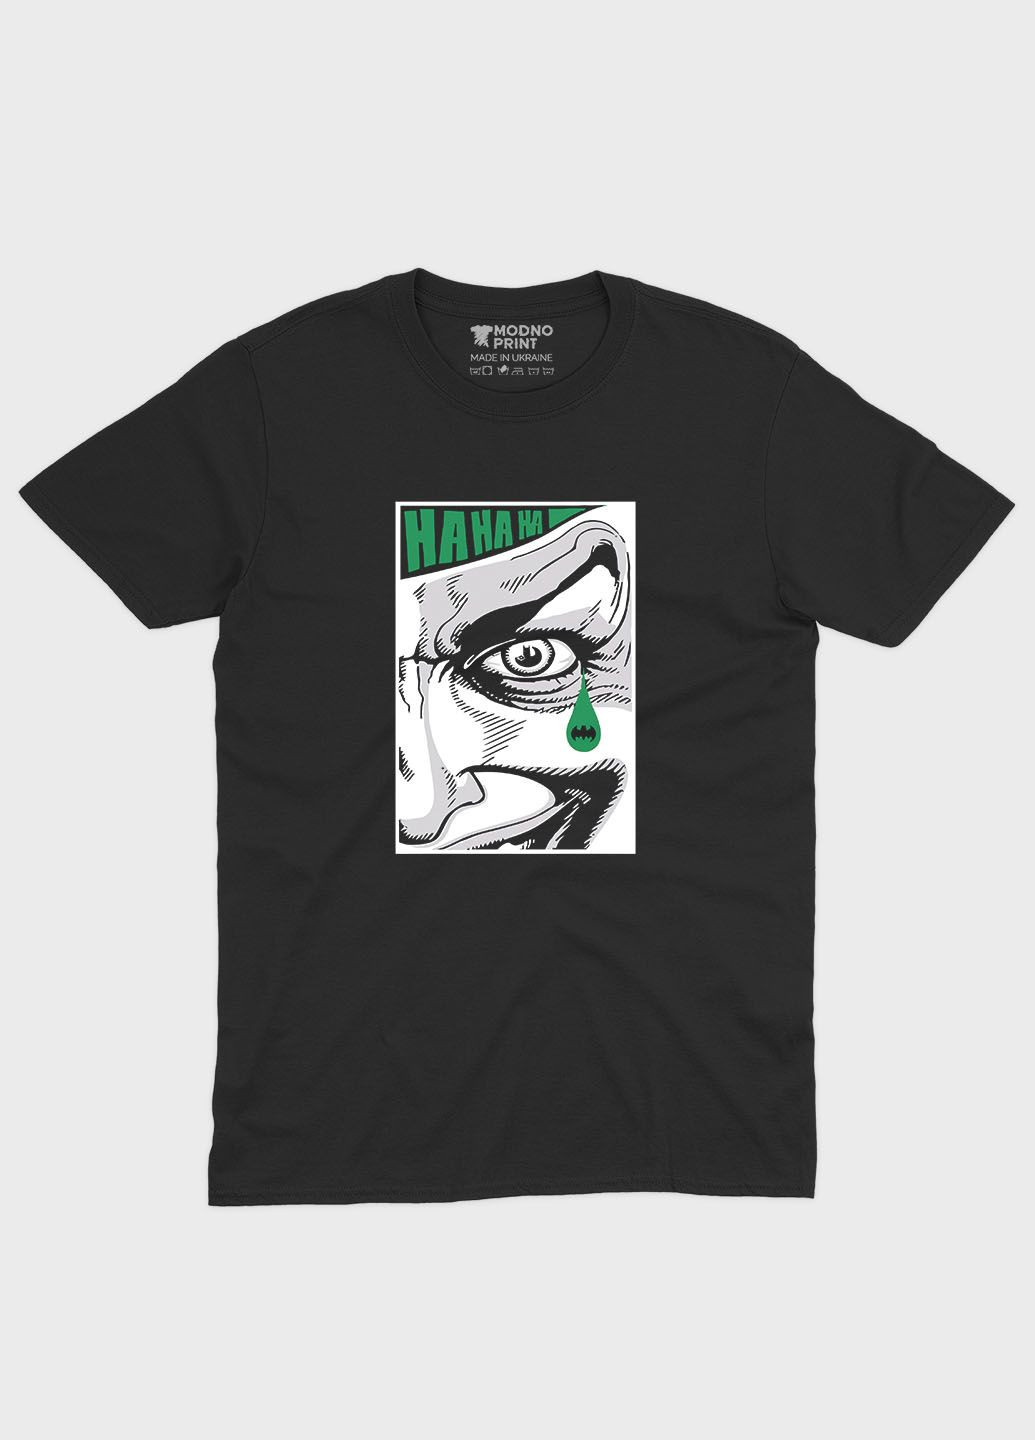 Чорна чоловіча футболка з принтом суперзлодія - джокер (ts001-1-bl-006-005-005) Modno